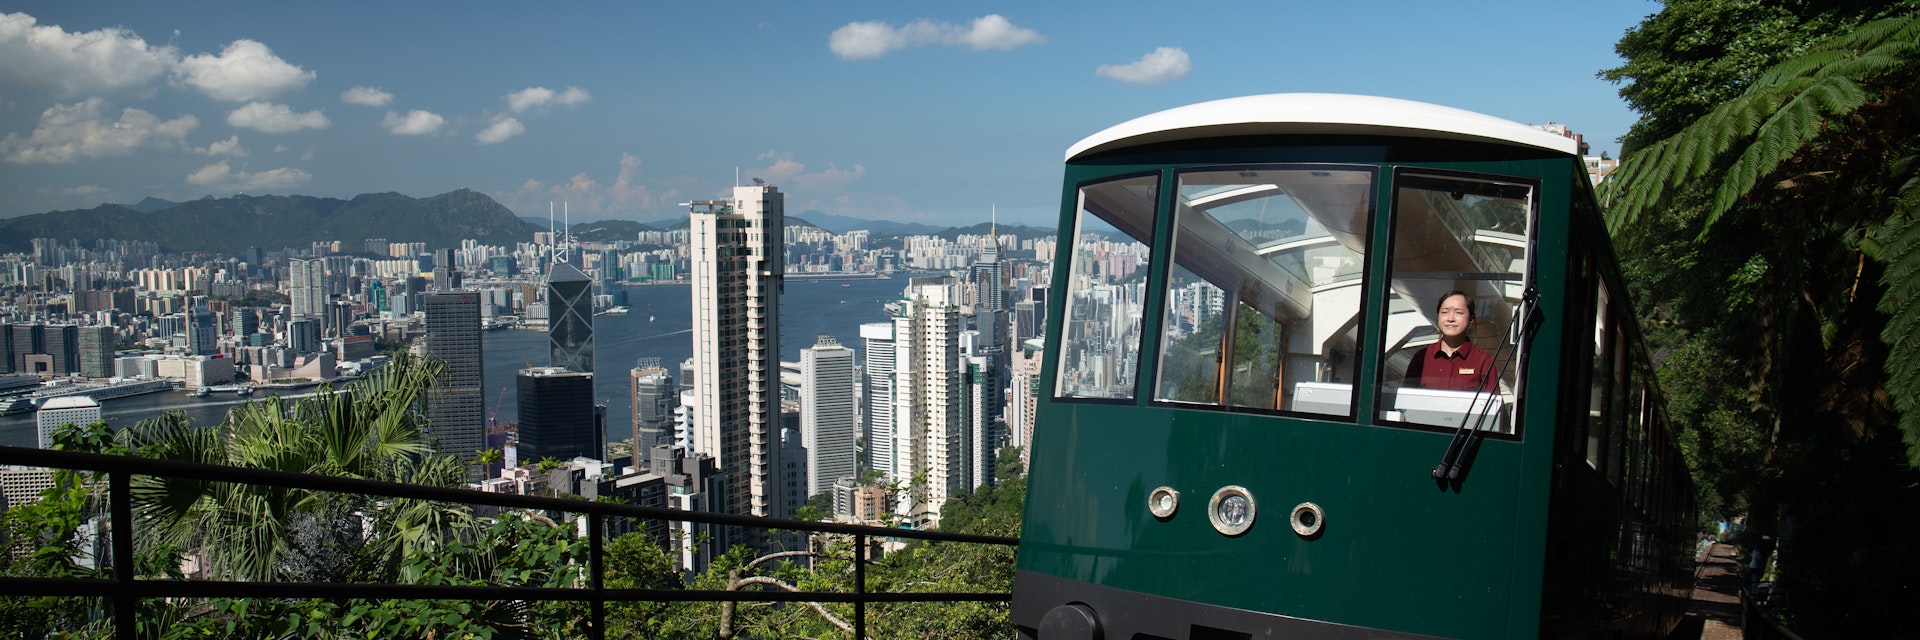 Peak Tram
Hong Kong's Peak Tram going up an incline